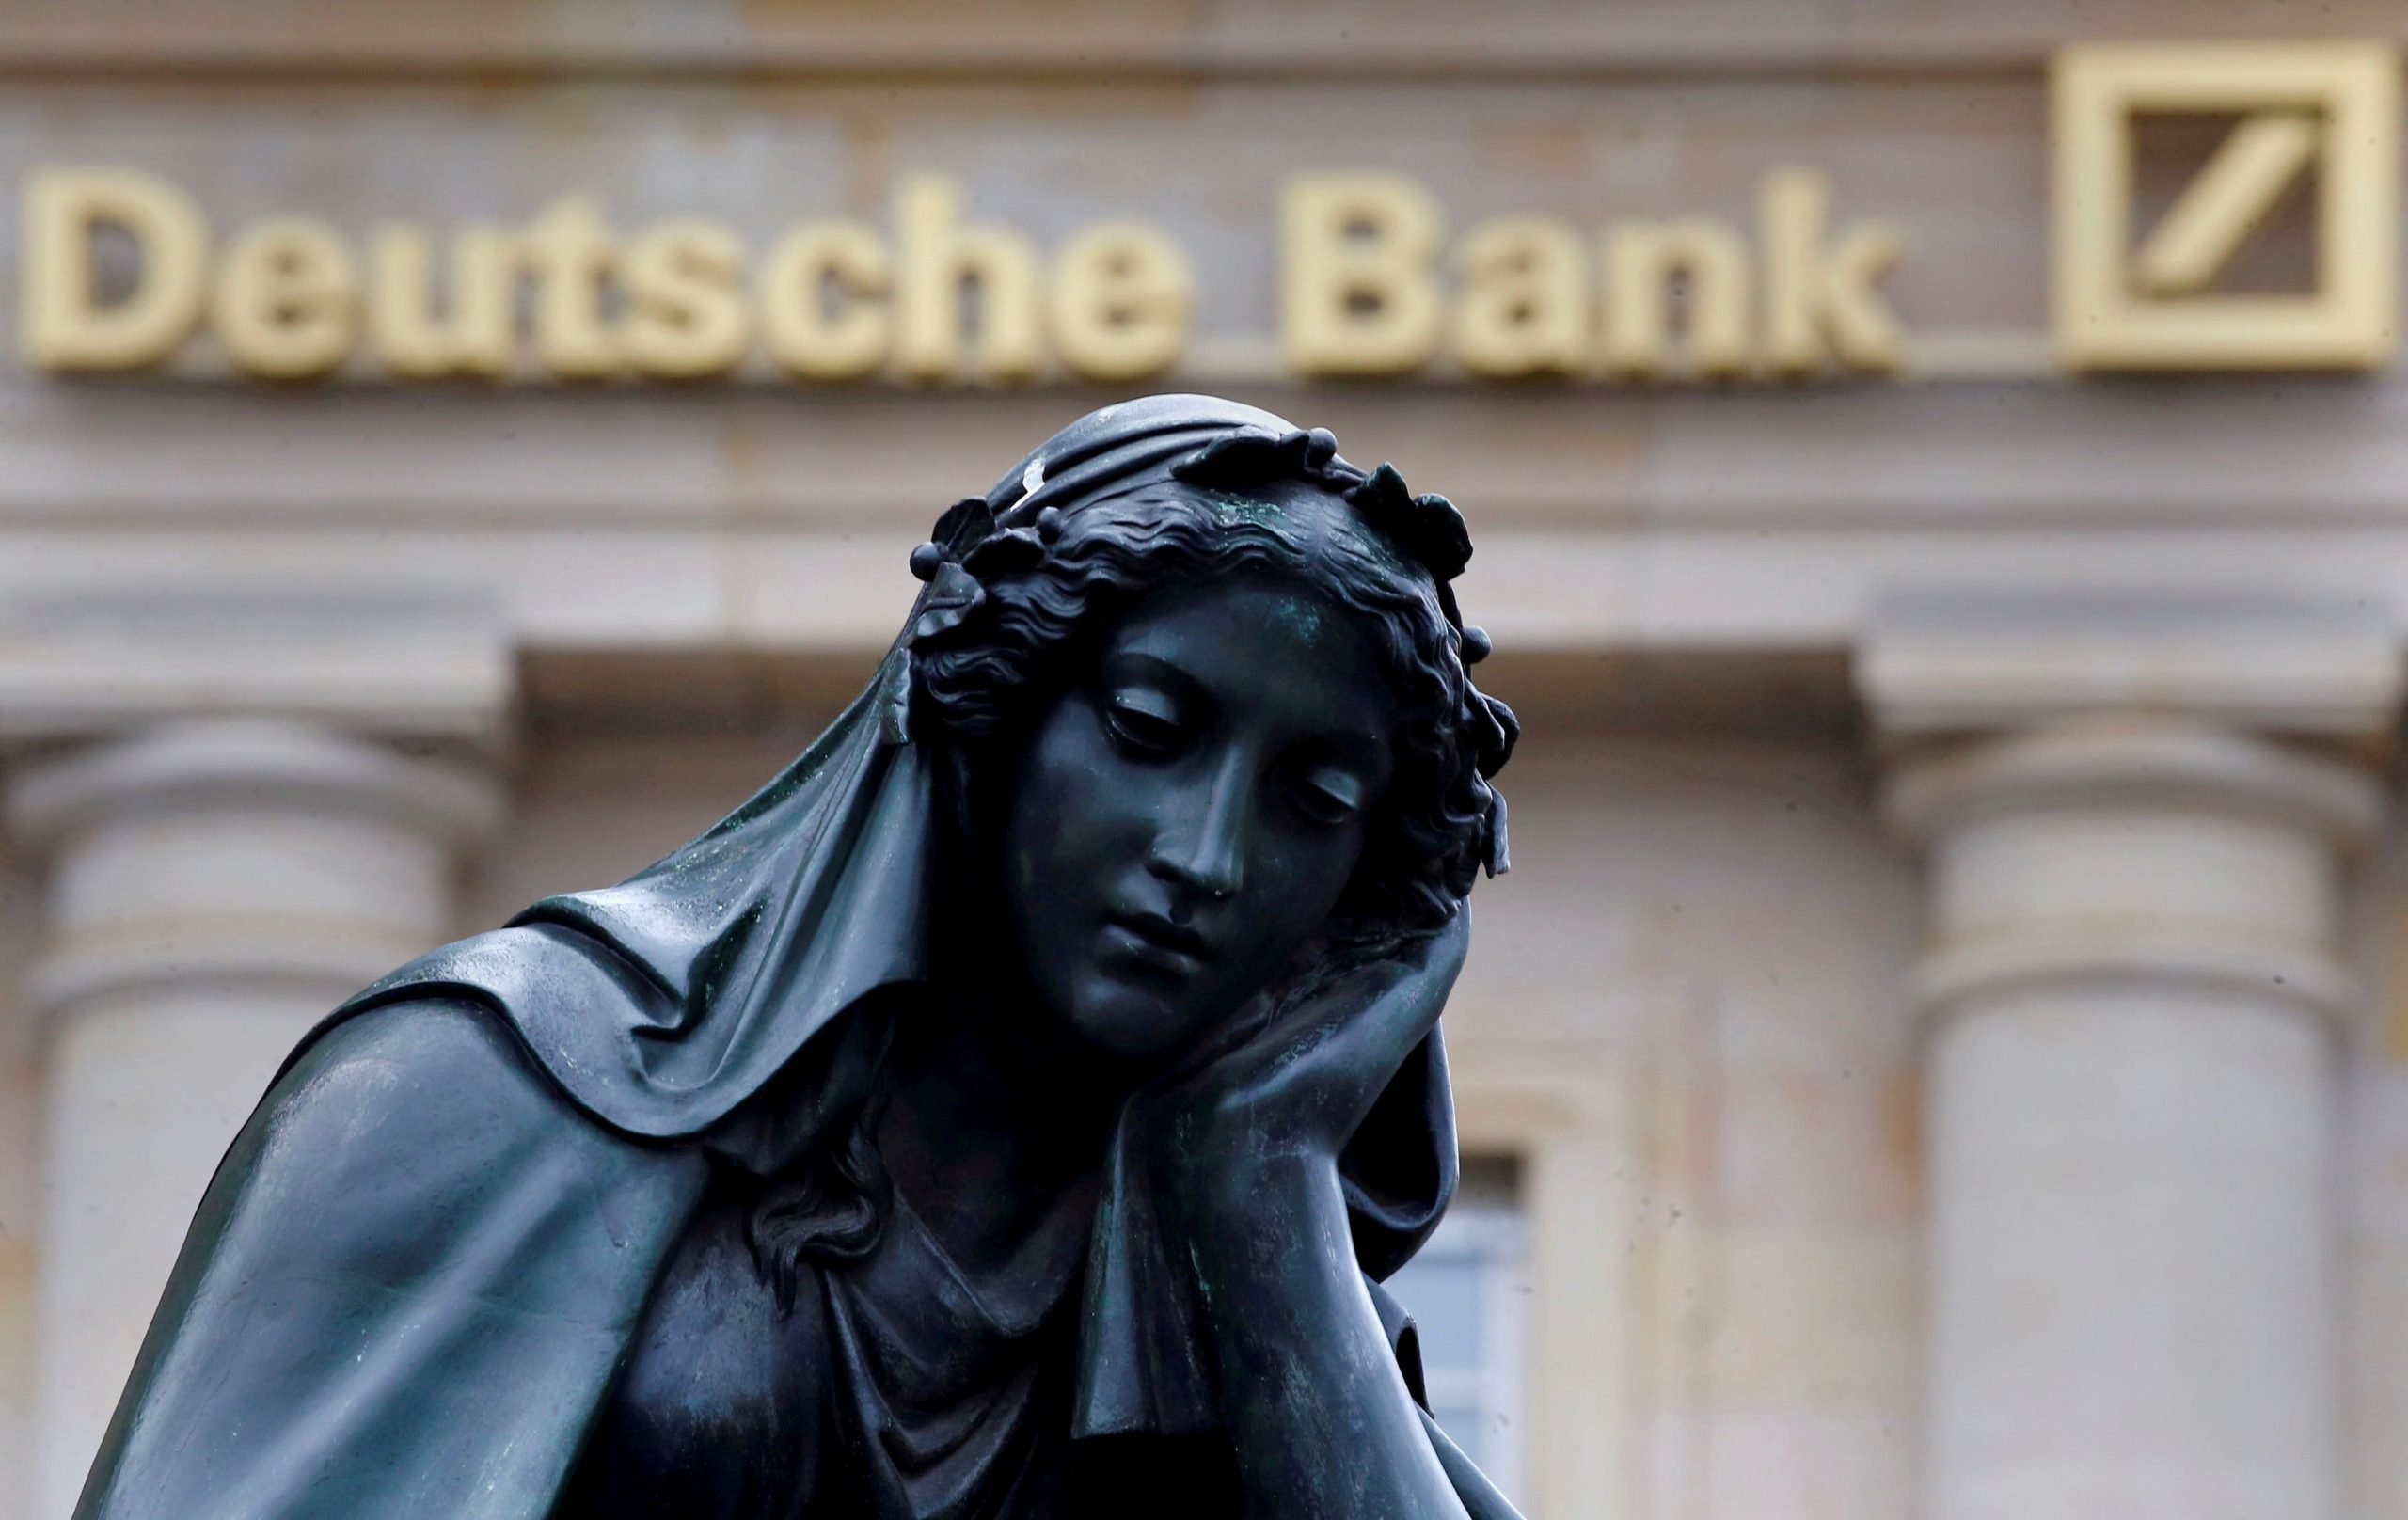 Η κρίση των εμπορικών ακινήτων έφτασε και στην Ευρώπη: «Βουτιά» στα ομόλογα των γερμανικών τραπεζών